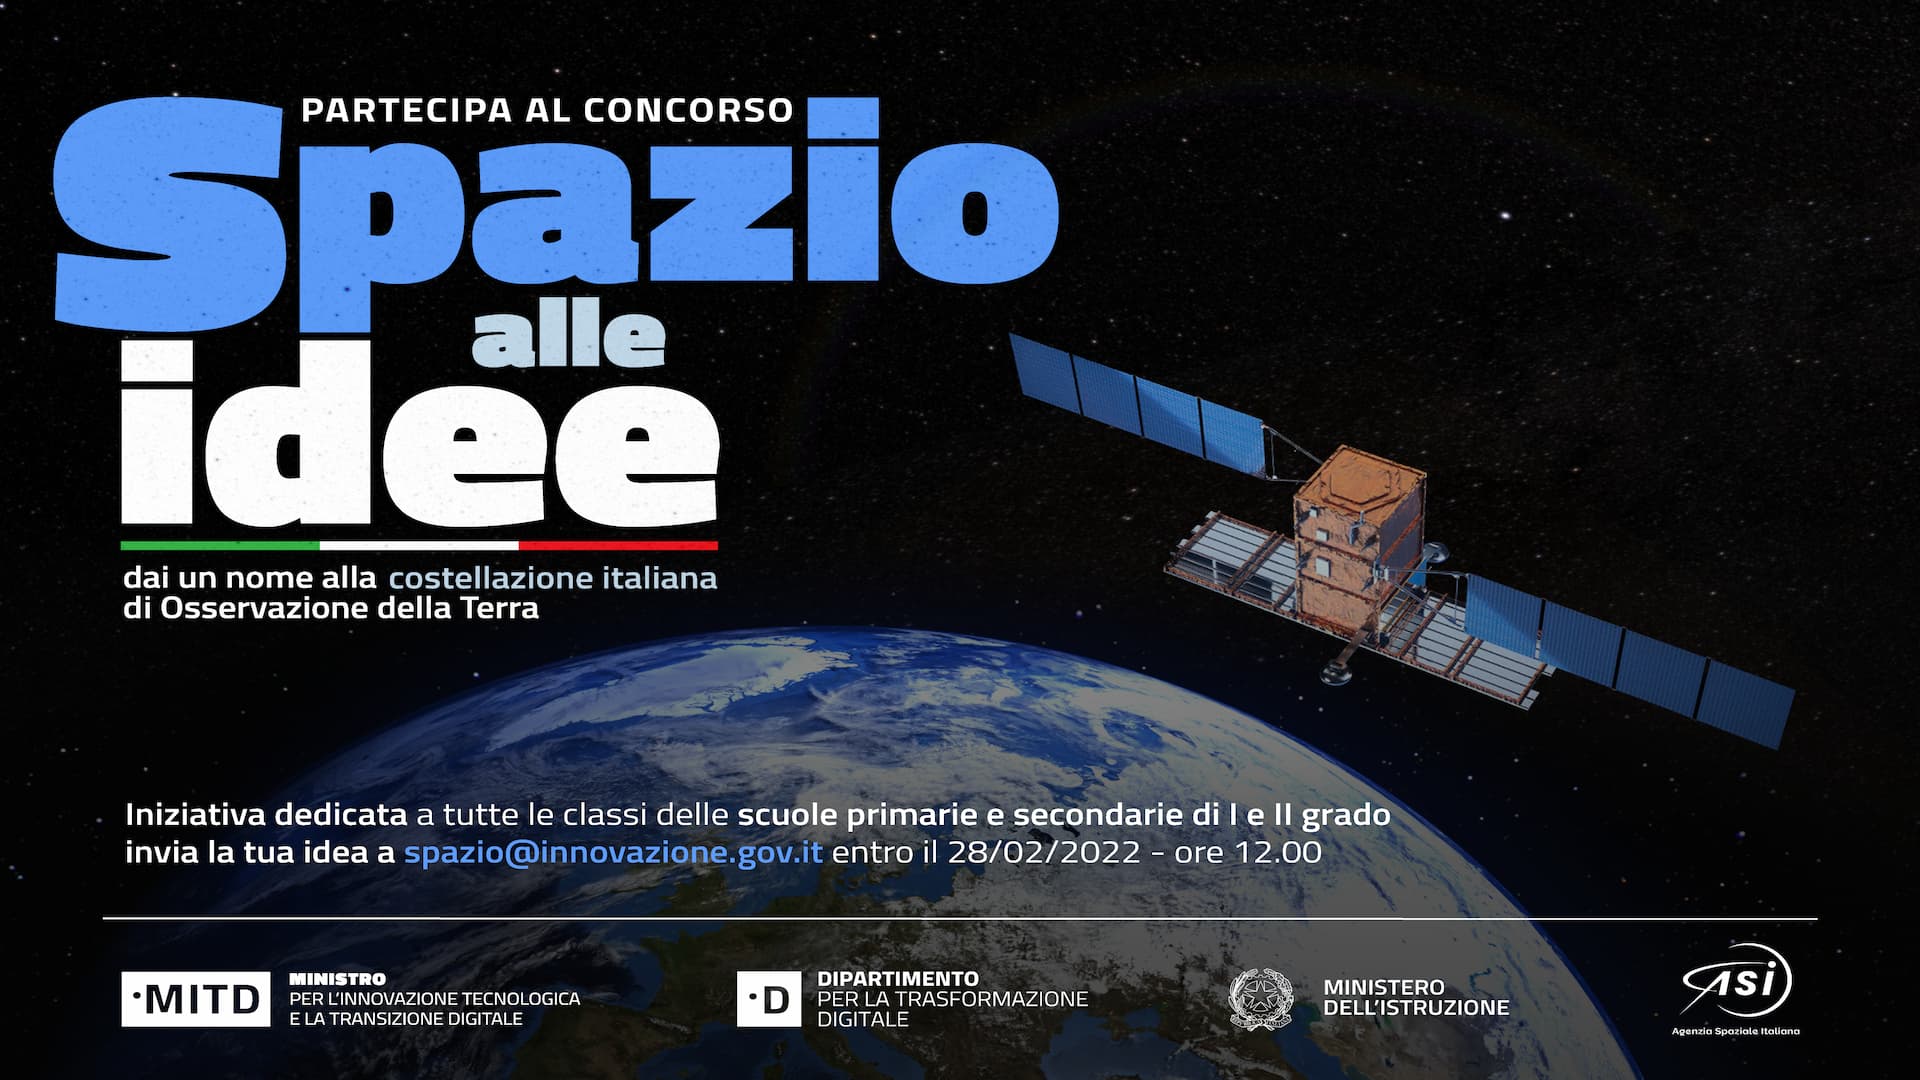 ASI - Spazio, via al concorso per il nome della costellazione satellitare italiana di Osservazione della Terra